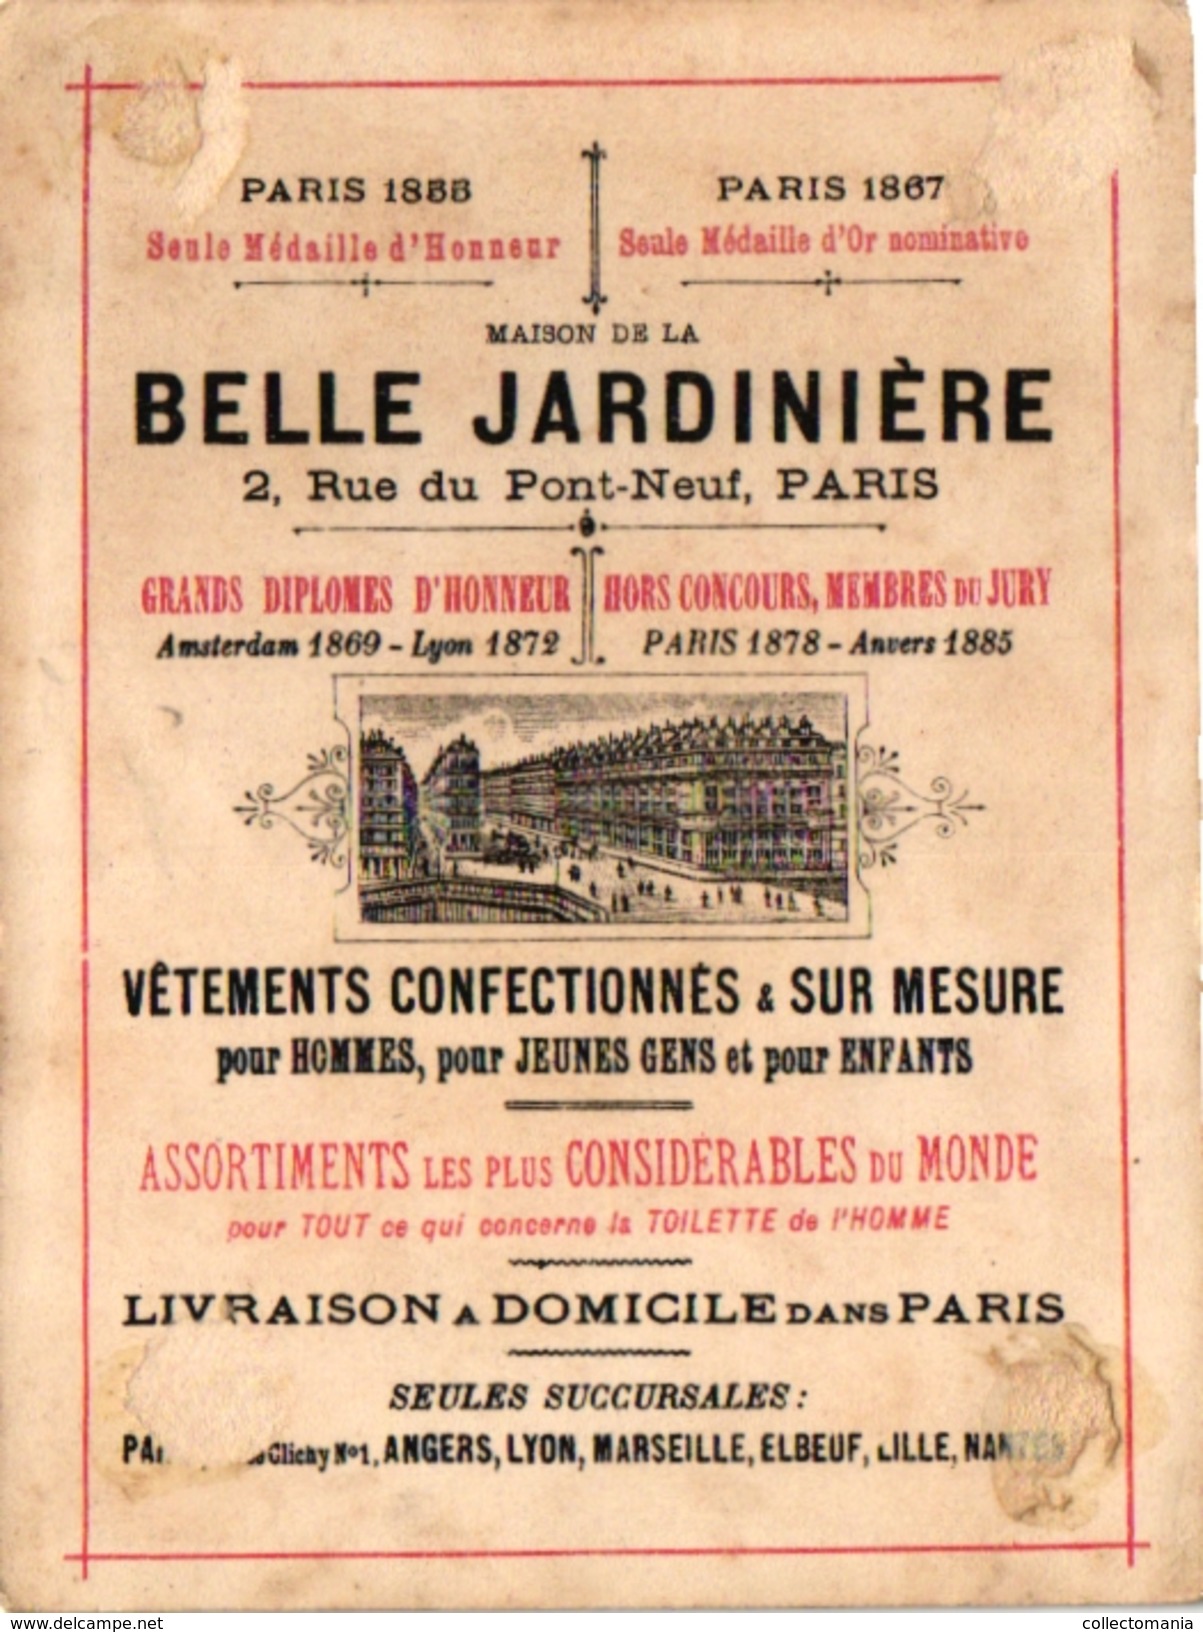 5 CARDS C1900 CROQUET GAME JEU de CROQUET Krocketspiel Pub Belle Jardinière chromo litho trade advertising